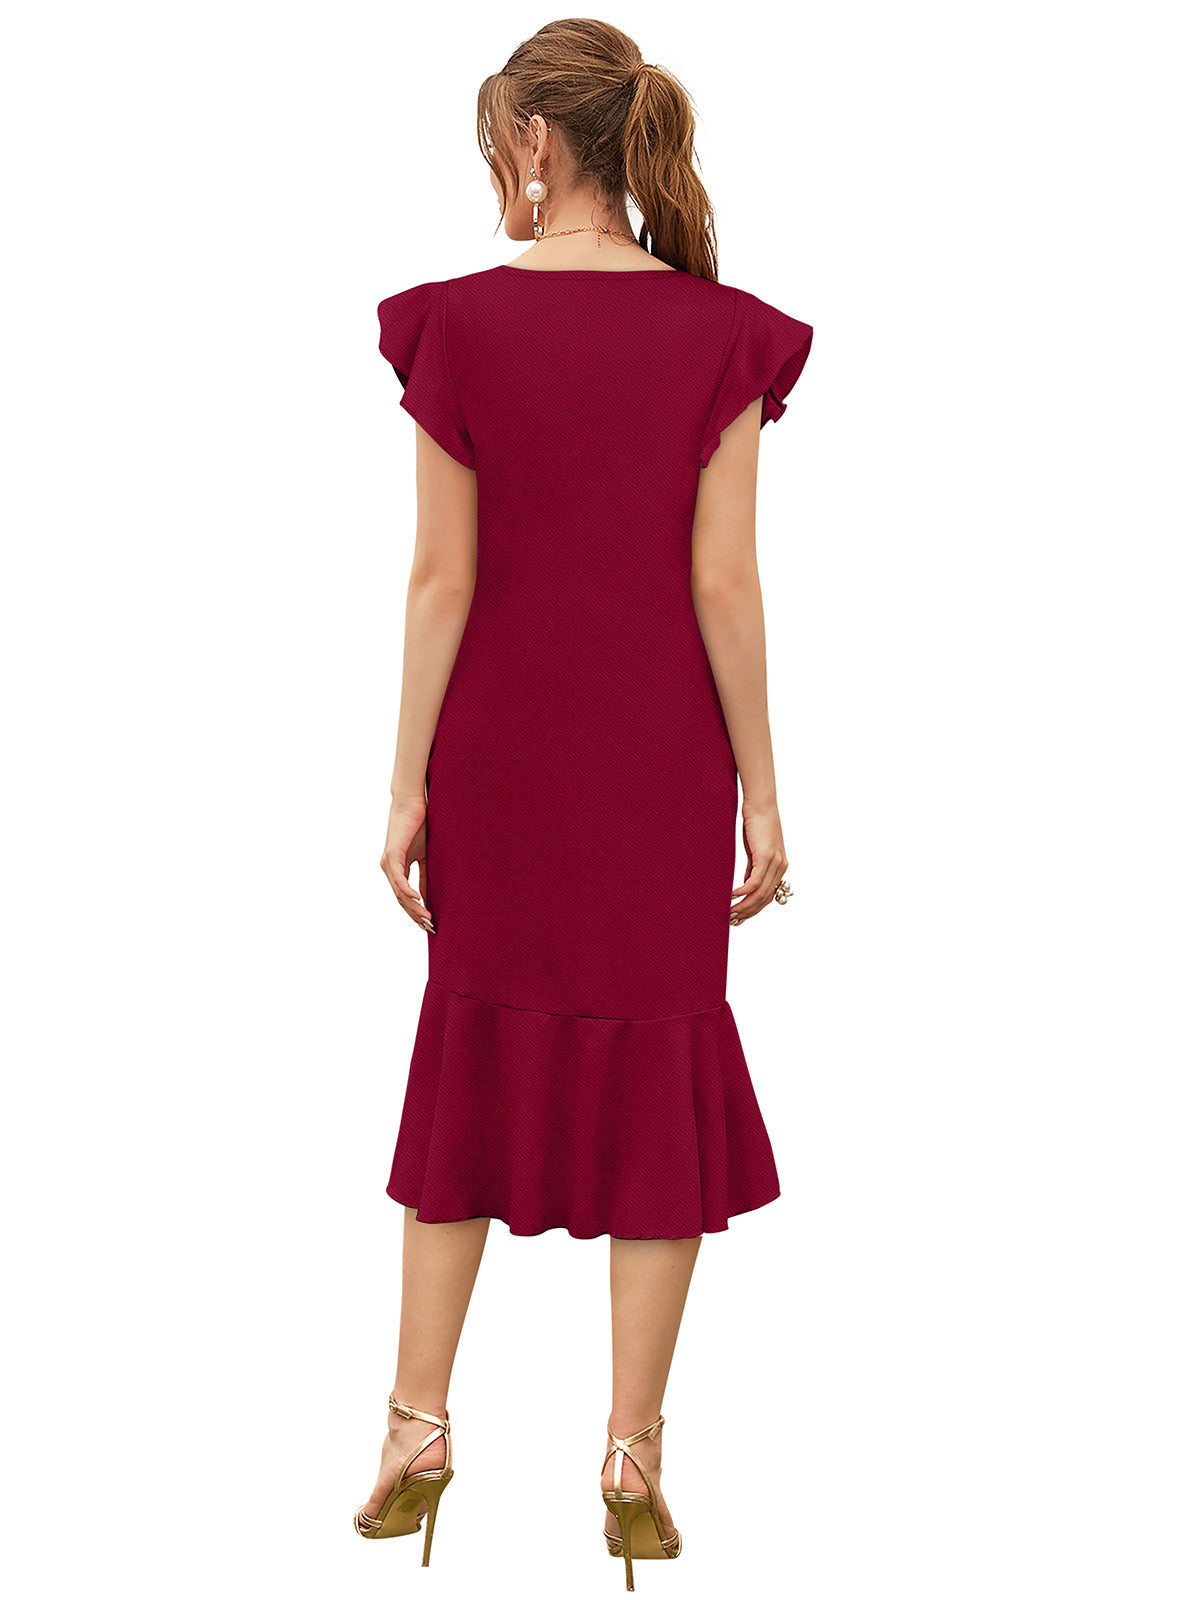 Odette Maroon Knit Fabric Dress For Women